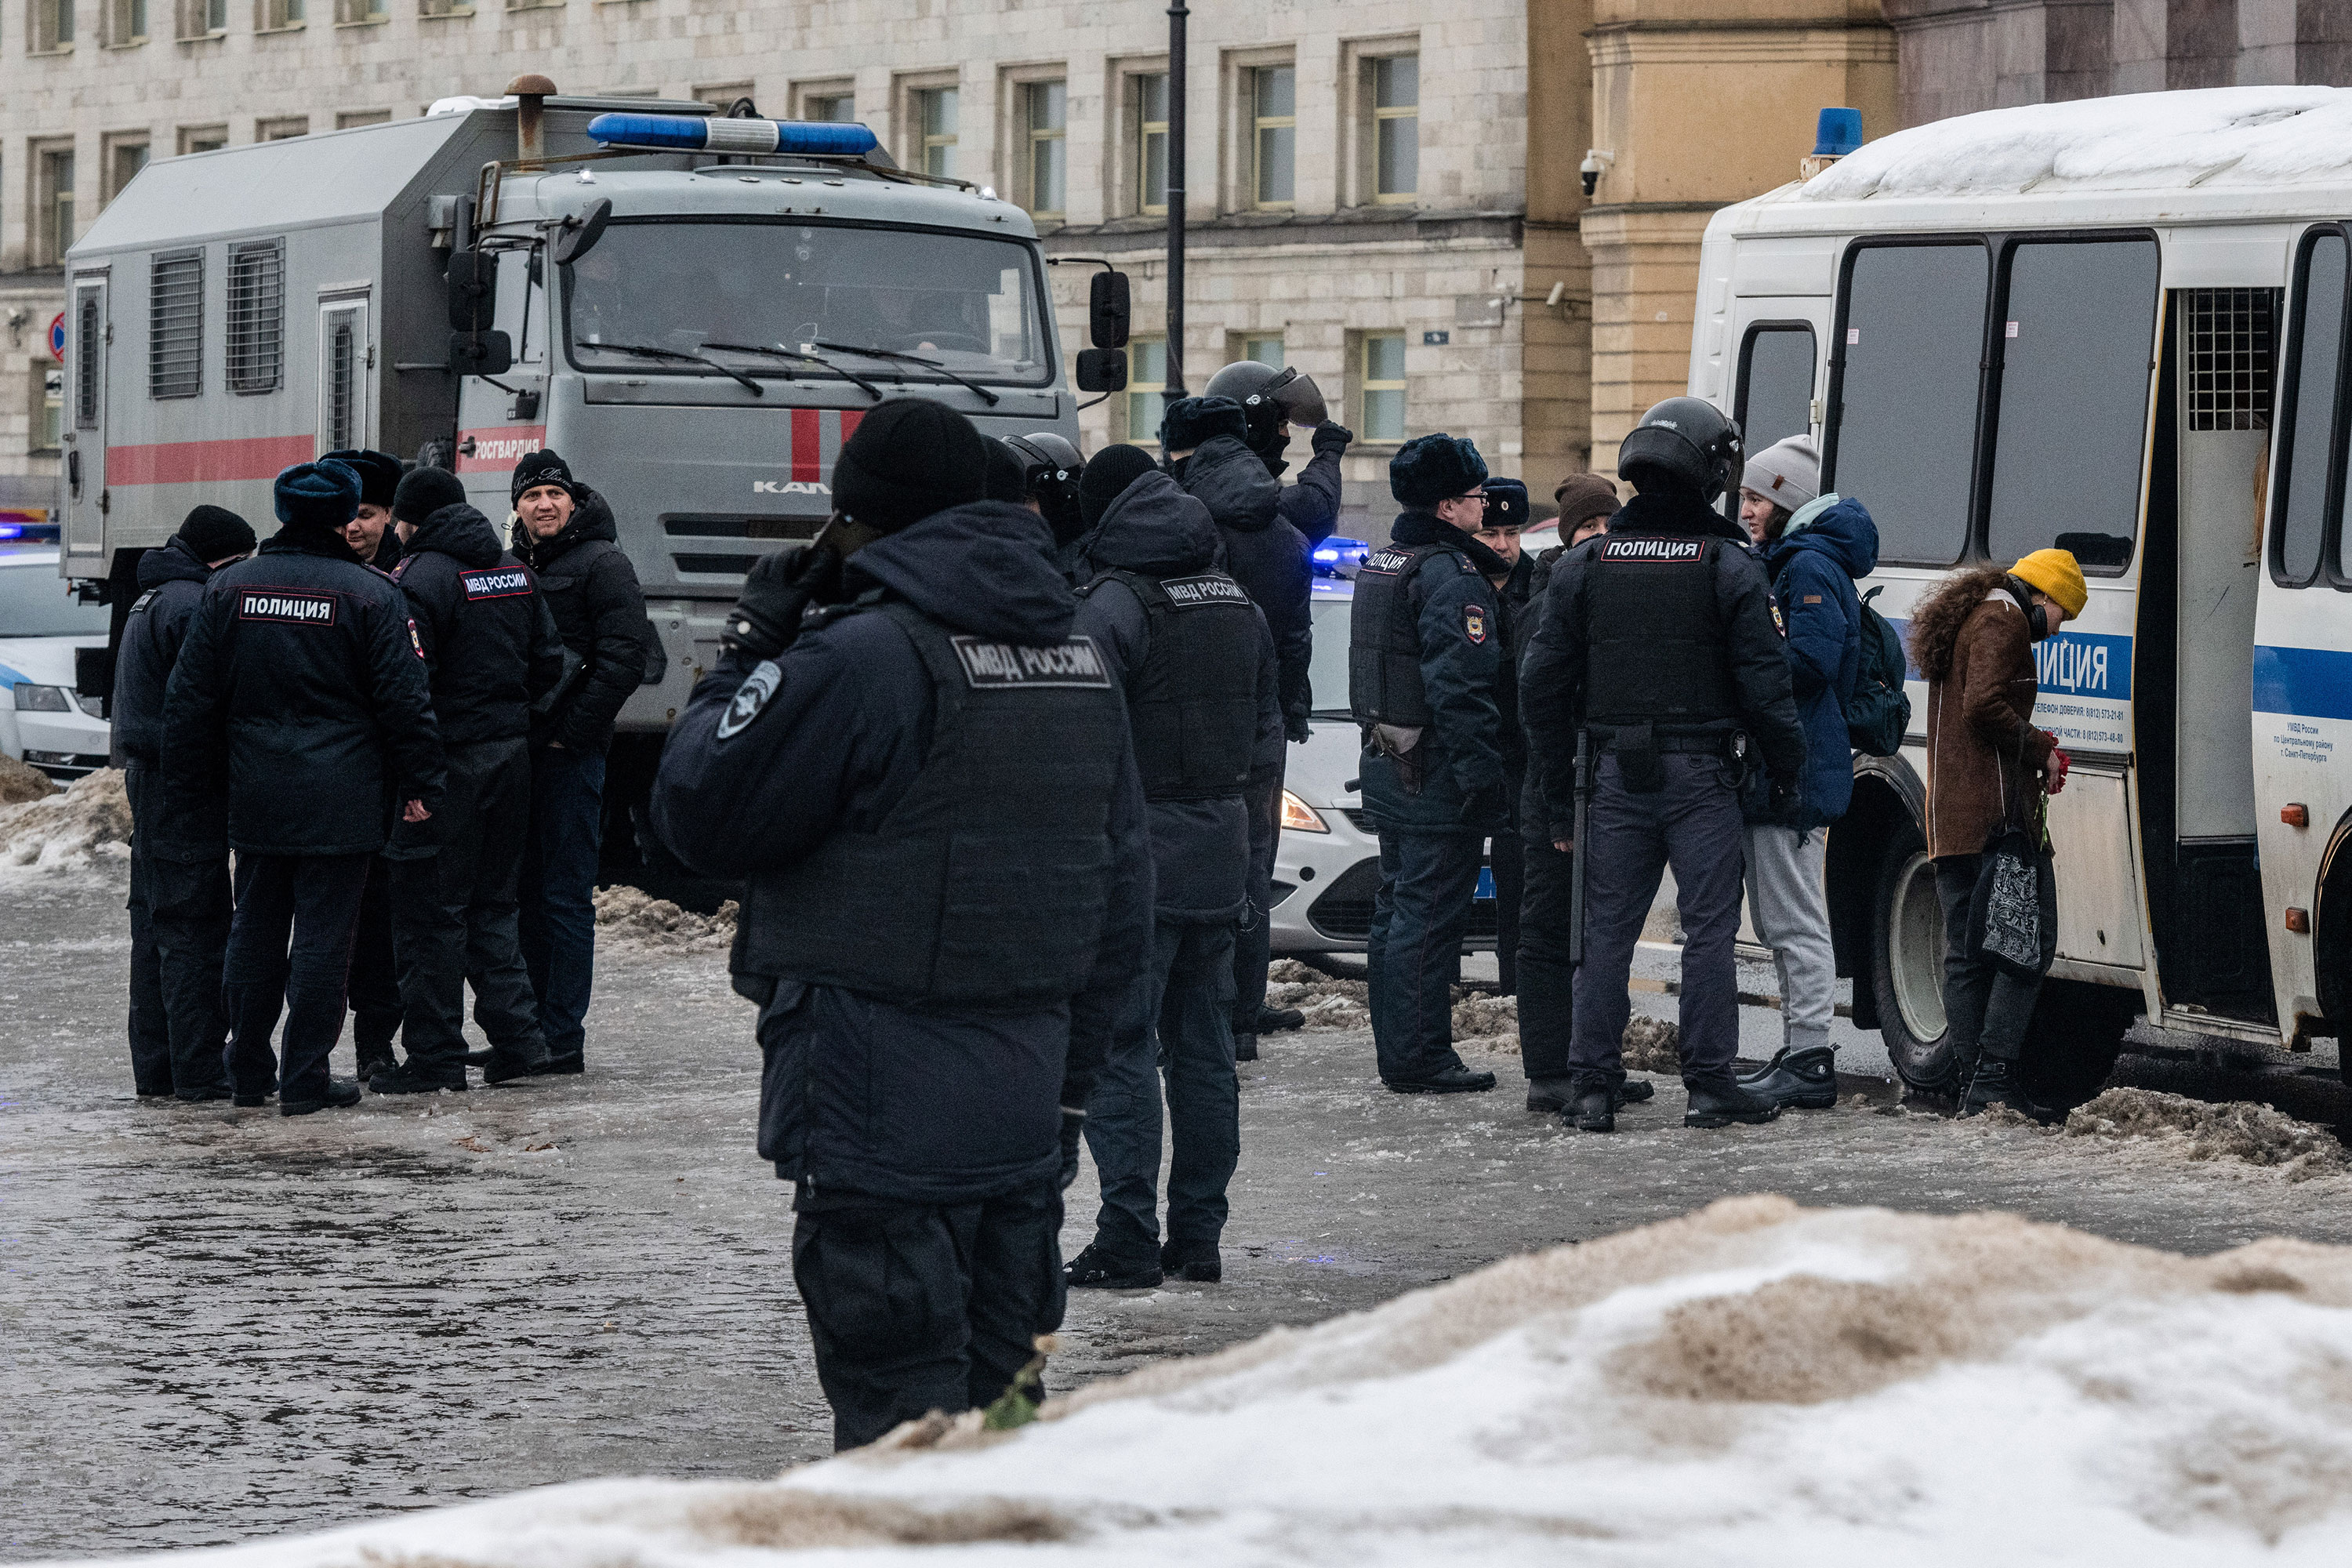 La policía detiene a personas después de depositar flores en un monumento a las víctimas de la represión política en honor a Alexey Navalny en San Petersburgo, Rusia, el 17 de febrero.